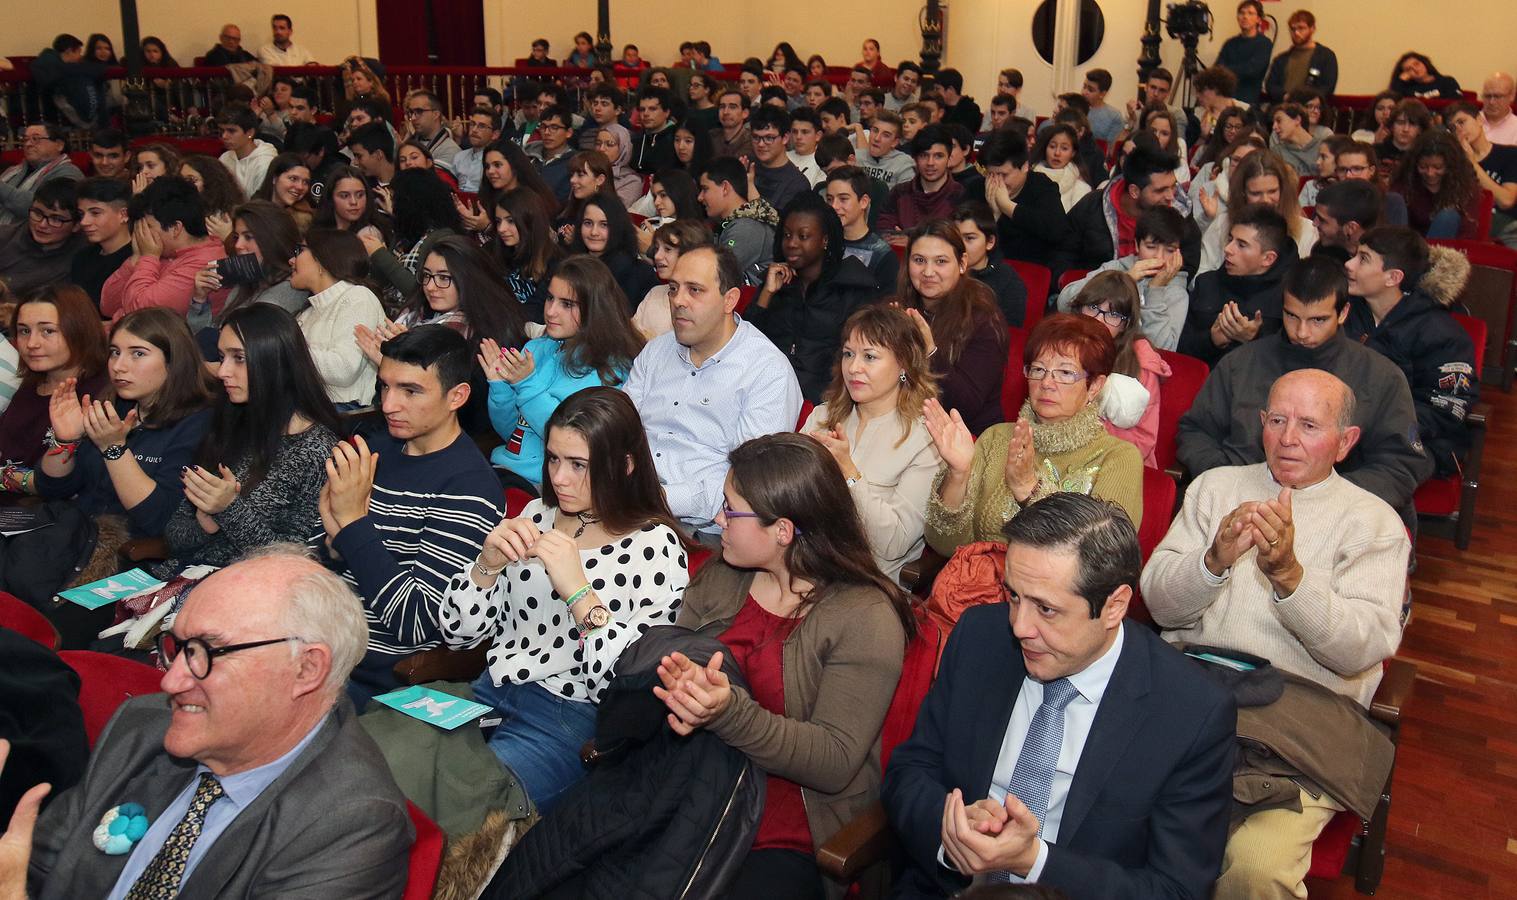 El Instituto Trinidad Arroyo de Palencia ha conseguido el primer puesto en esta primera edición en la que se han presentado 76 vídeos de centros educativos de toda Castilla y León